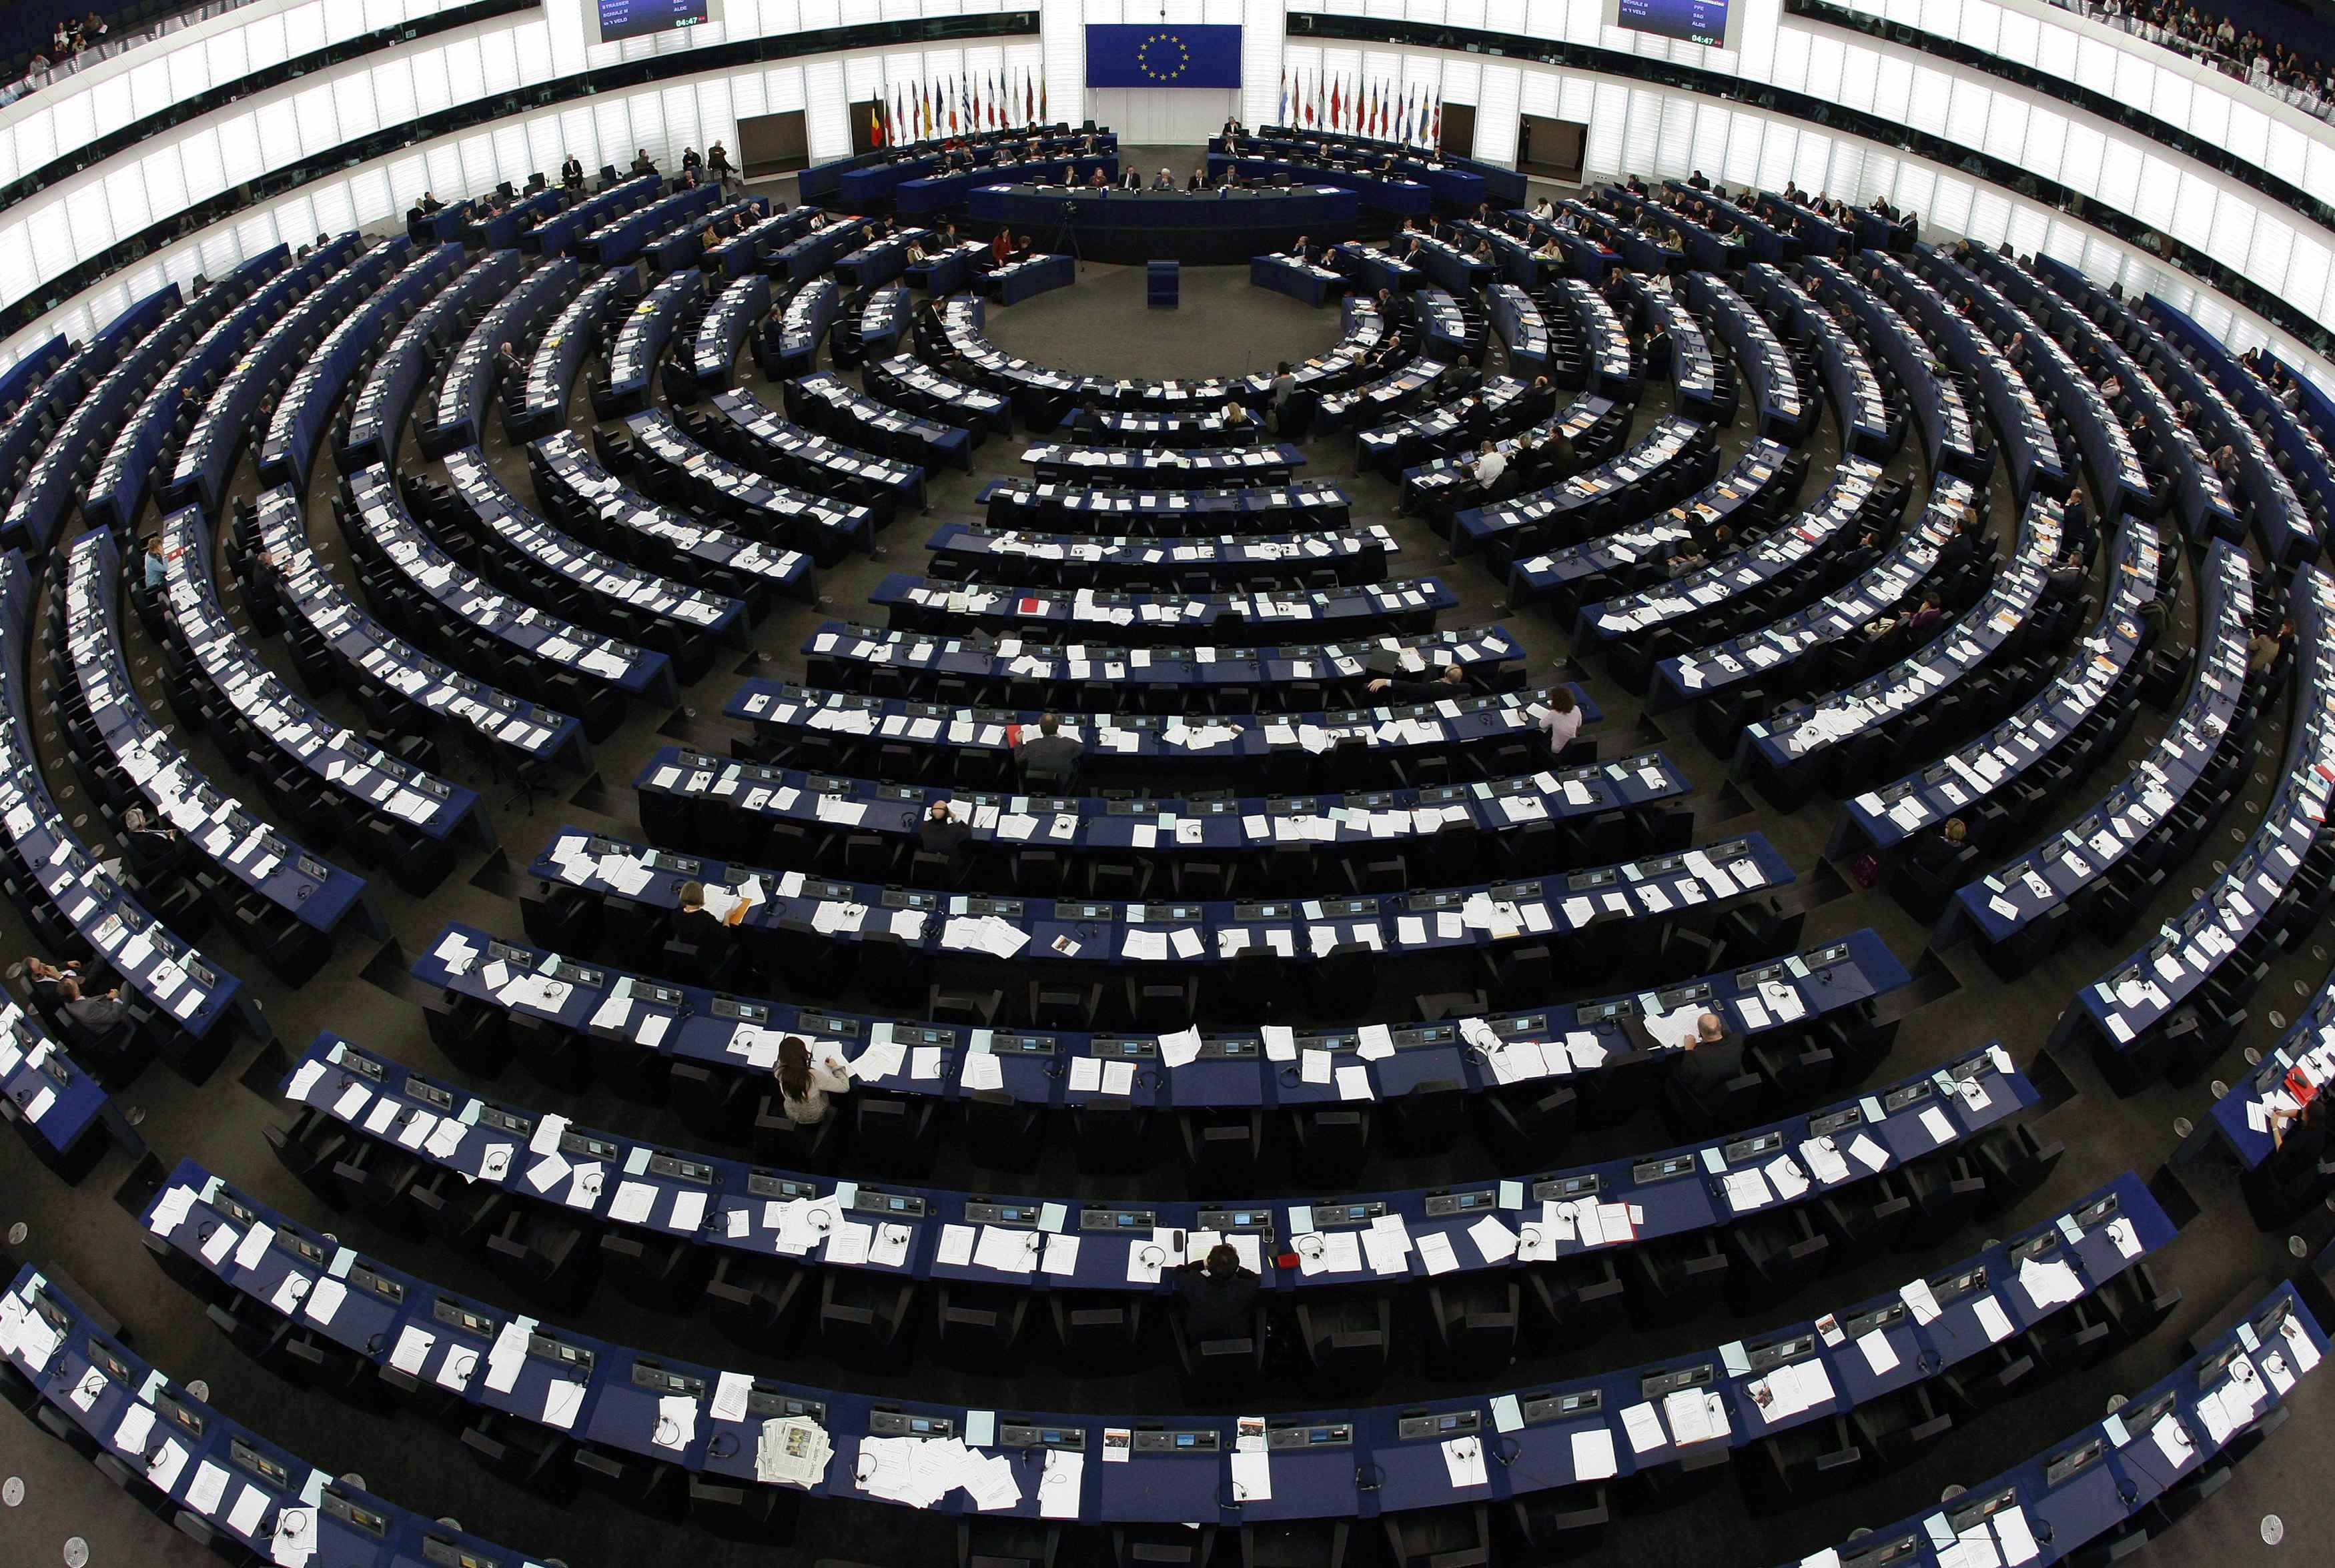 Ευρωπαϊκό Κοινοβούλιο: Κατάρα η τρόικα – Δεν λειτούργησε σωστά – Έσωσε μεν χώρες από την χρεοκοπία αλλά λειτούργησε με αδιαφάνεια